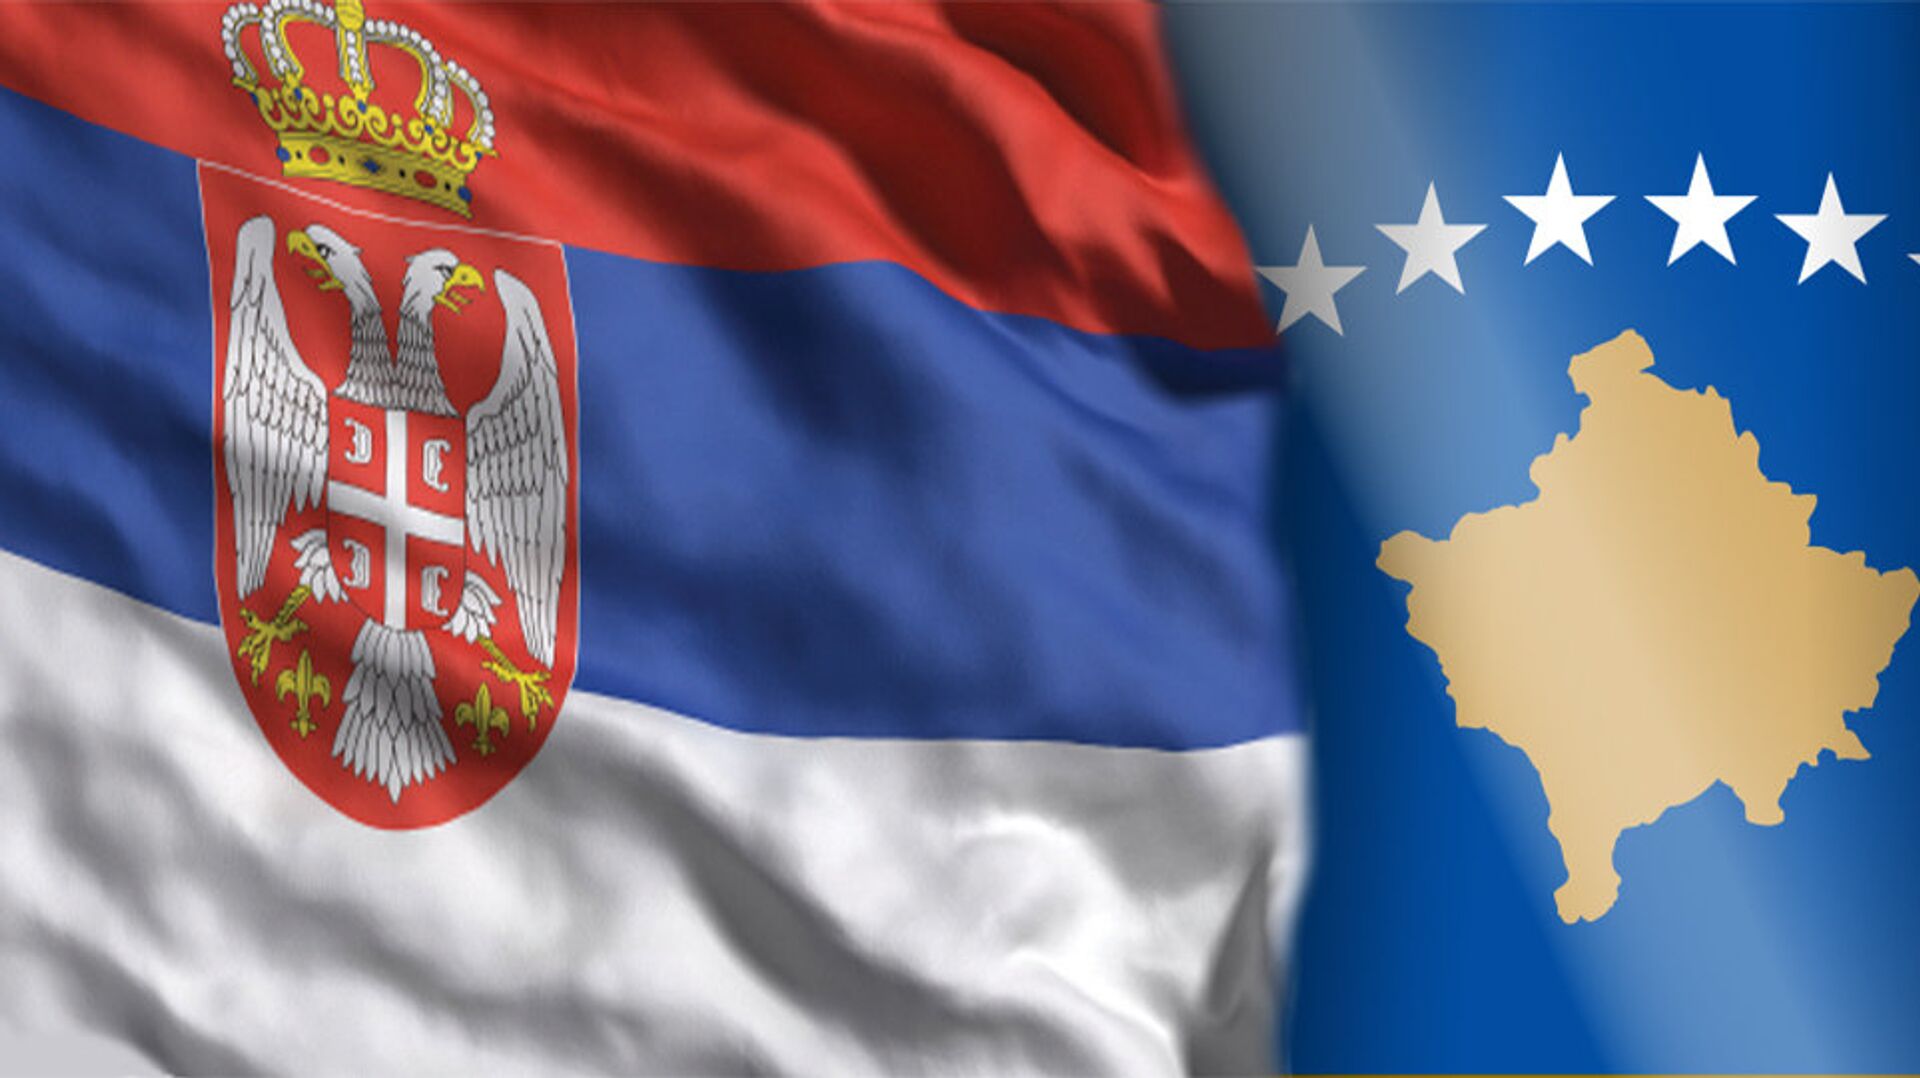 In безумная чистка Косово из всего сербского будут наказаны и албанцы - из-за одного слова в газете